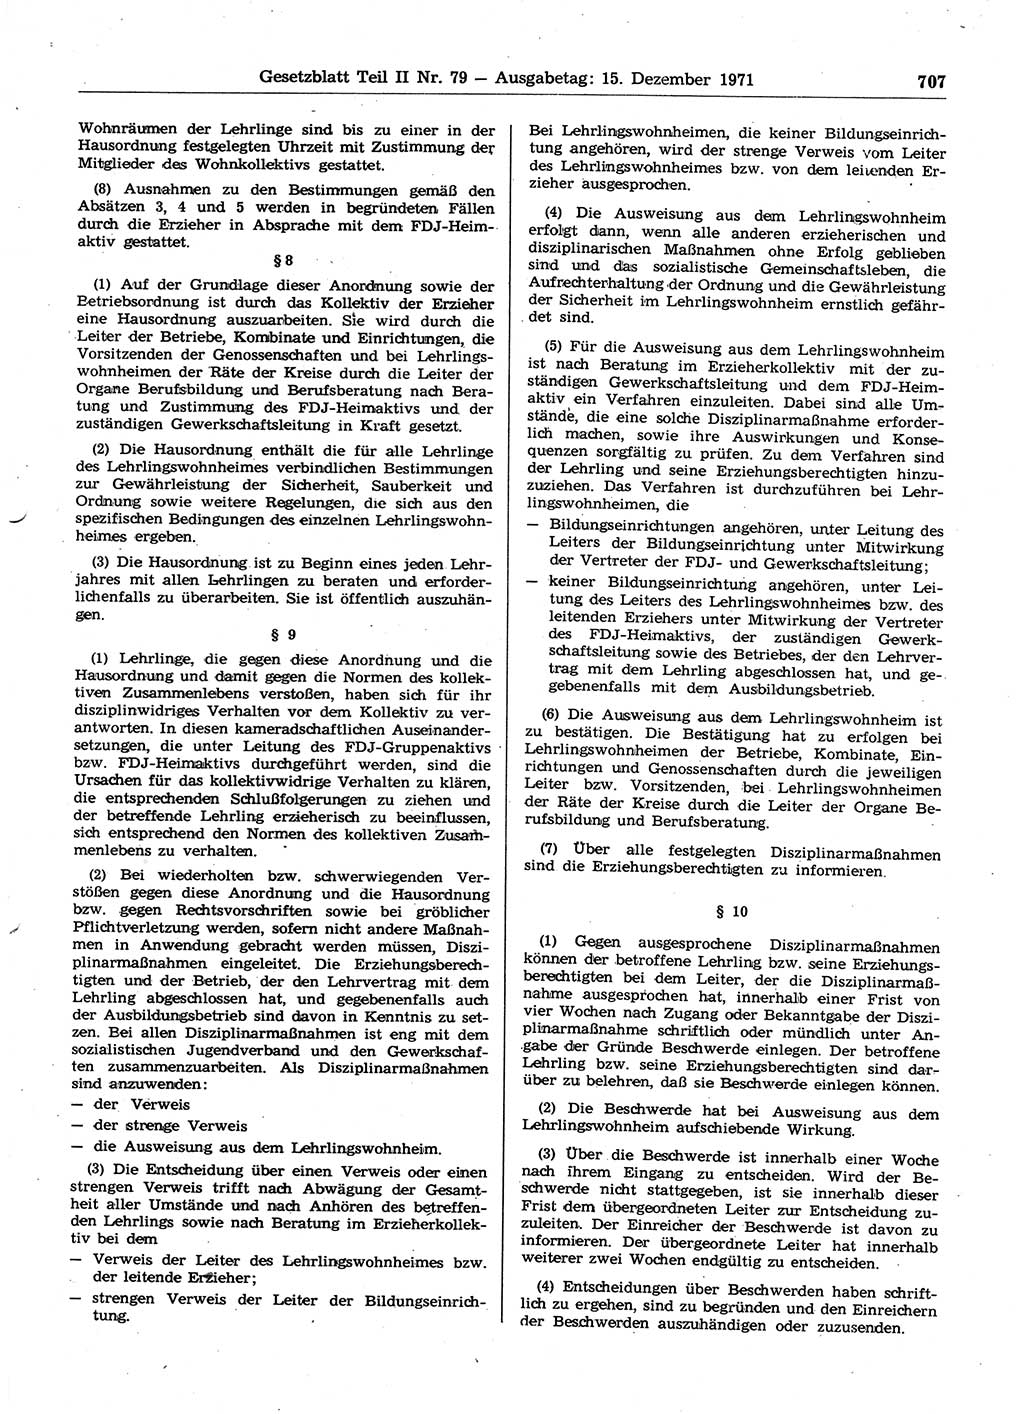 Gesetzblatt (GBl.) der Deutschen Demokratischen Republik (DDR) Teil ⅠⅠ 1971, Seite 707 (GBl. DDR ⅠⅠ 1971, S. 707)